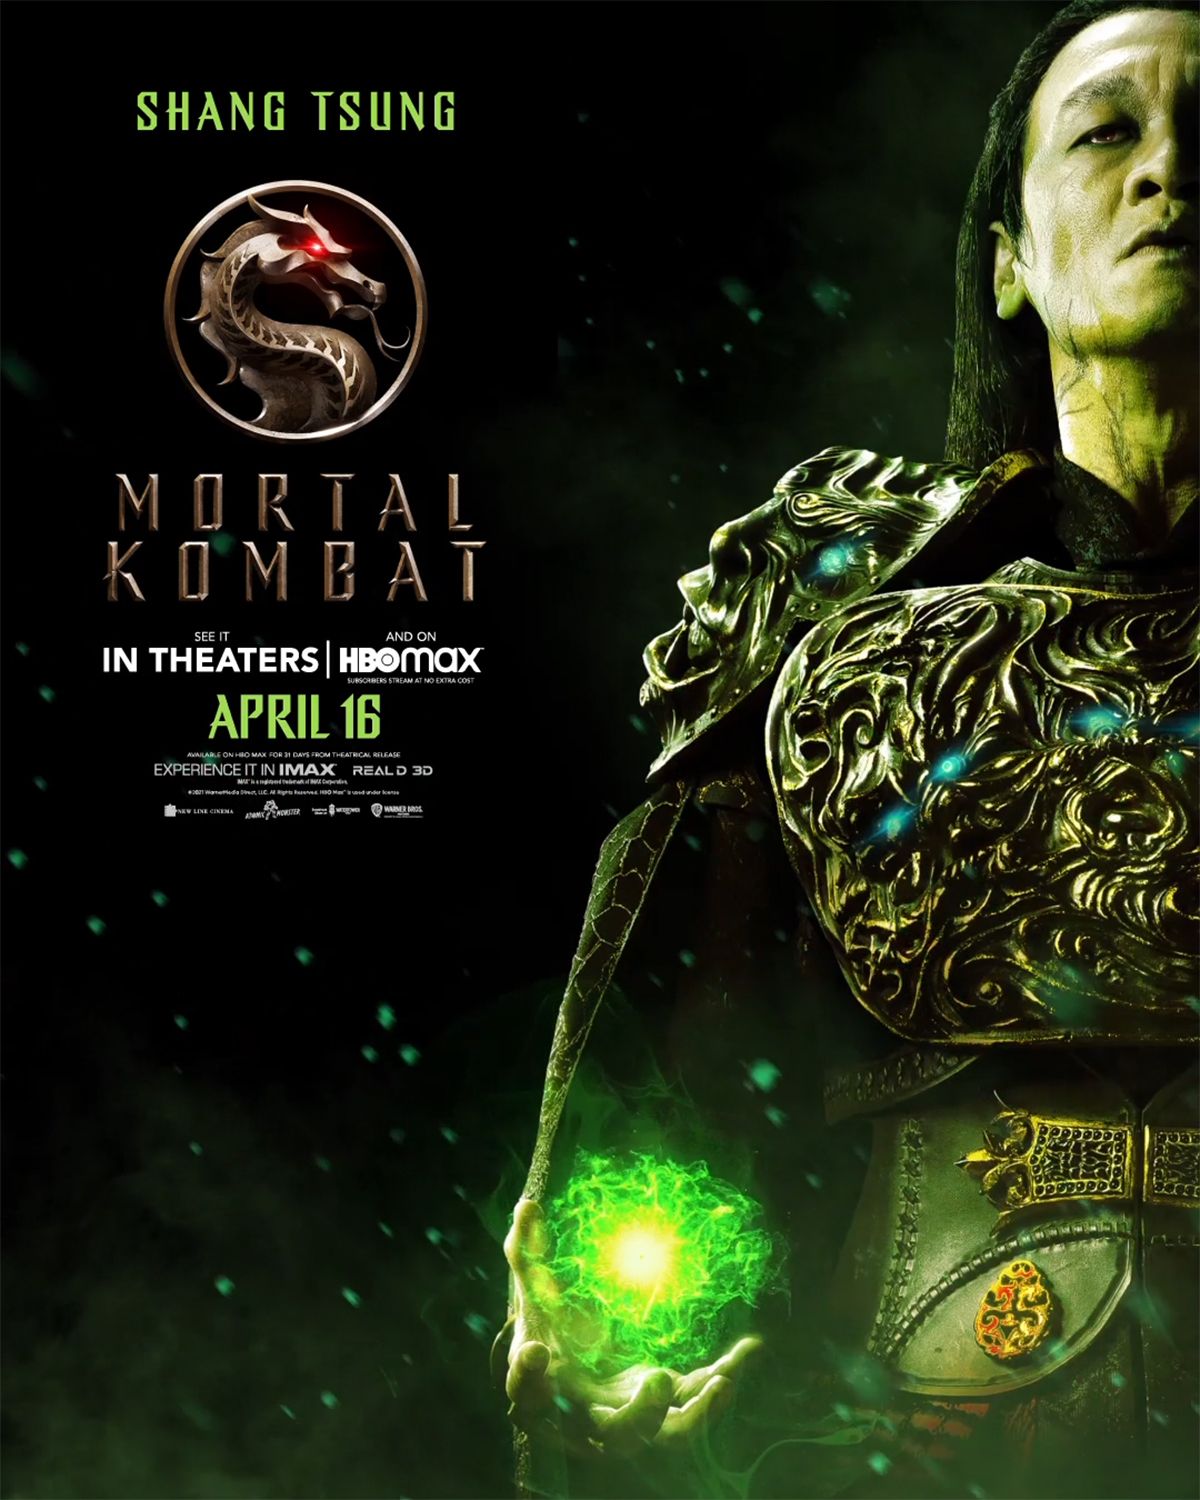 Shang Tsung character poster for Mortal Kombat movie